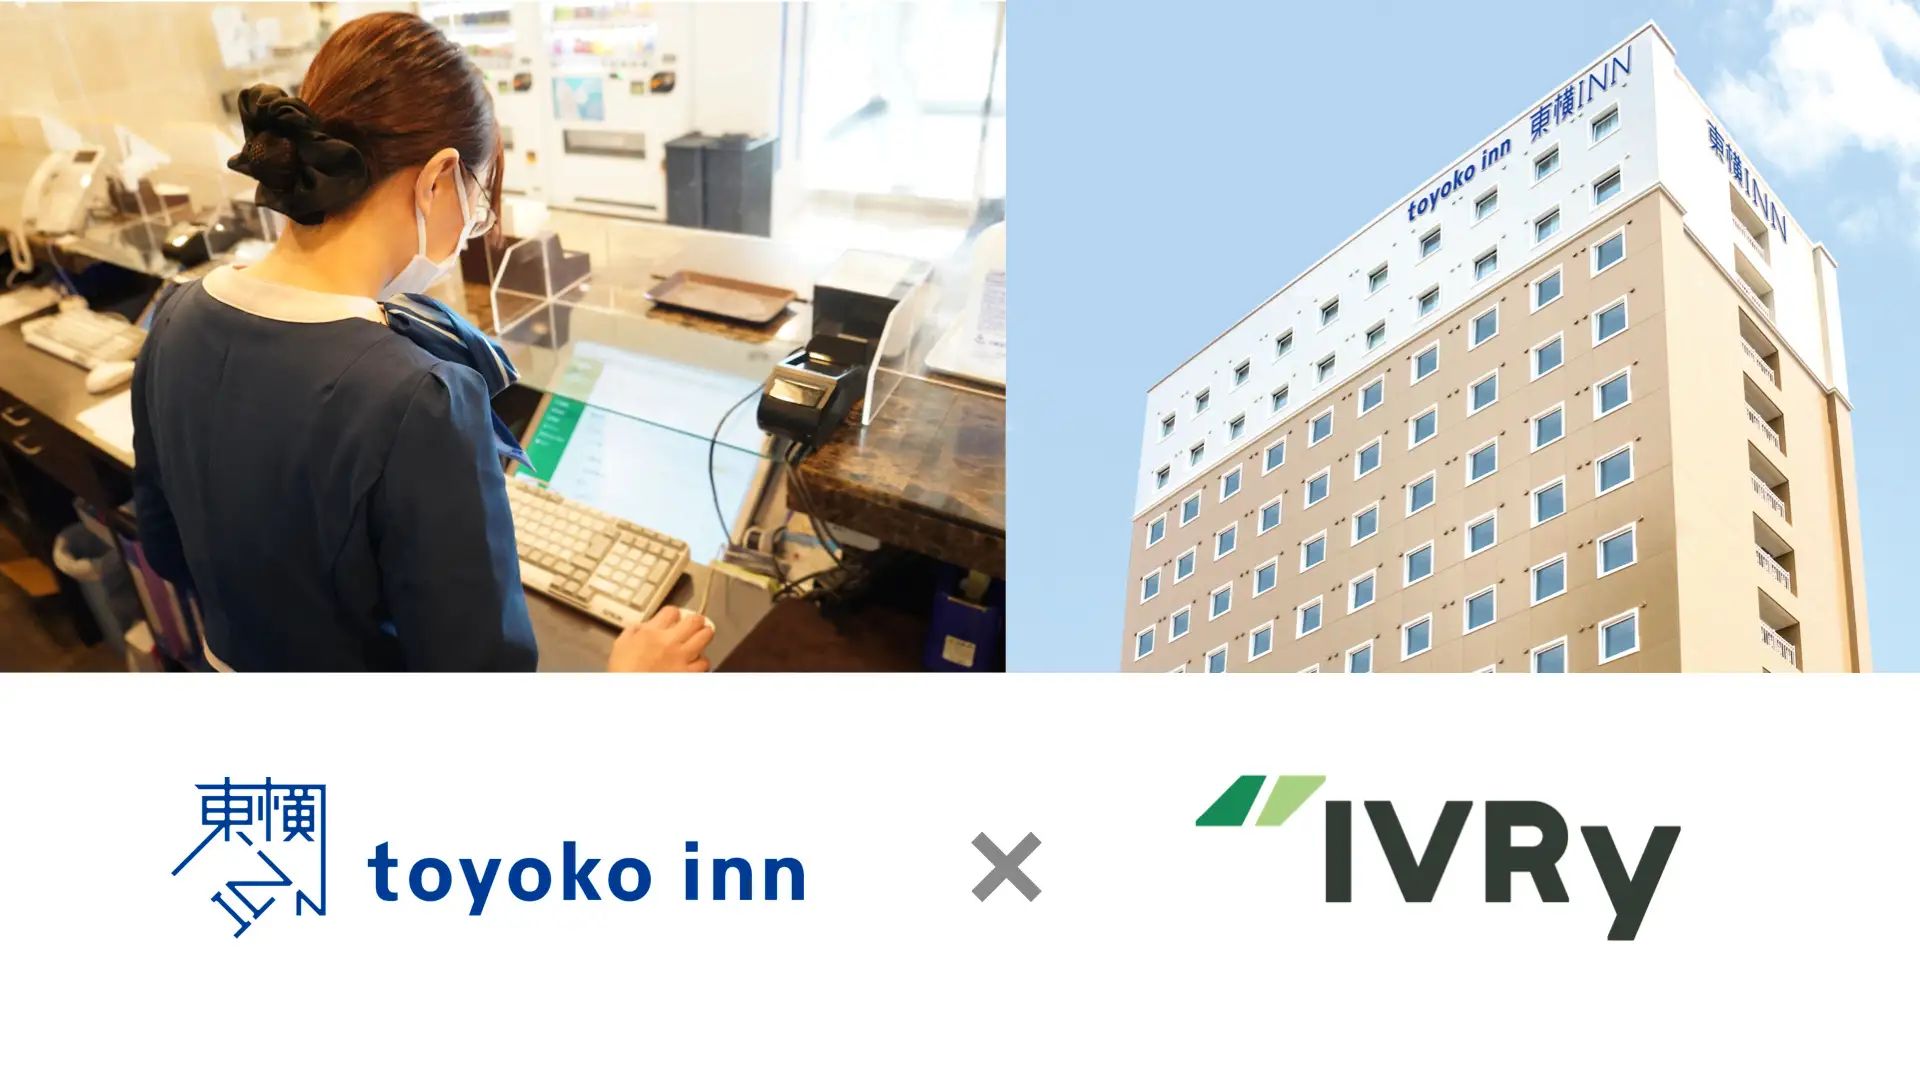 株式会社IVRy | 東横インが電話対応のDXによる業務効率化の実現に向けて電話自動応答サービス「IVRy」を304店舗に導入。